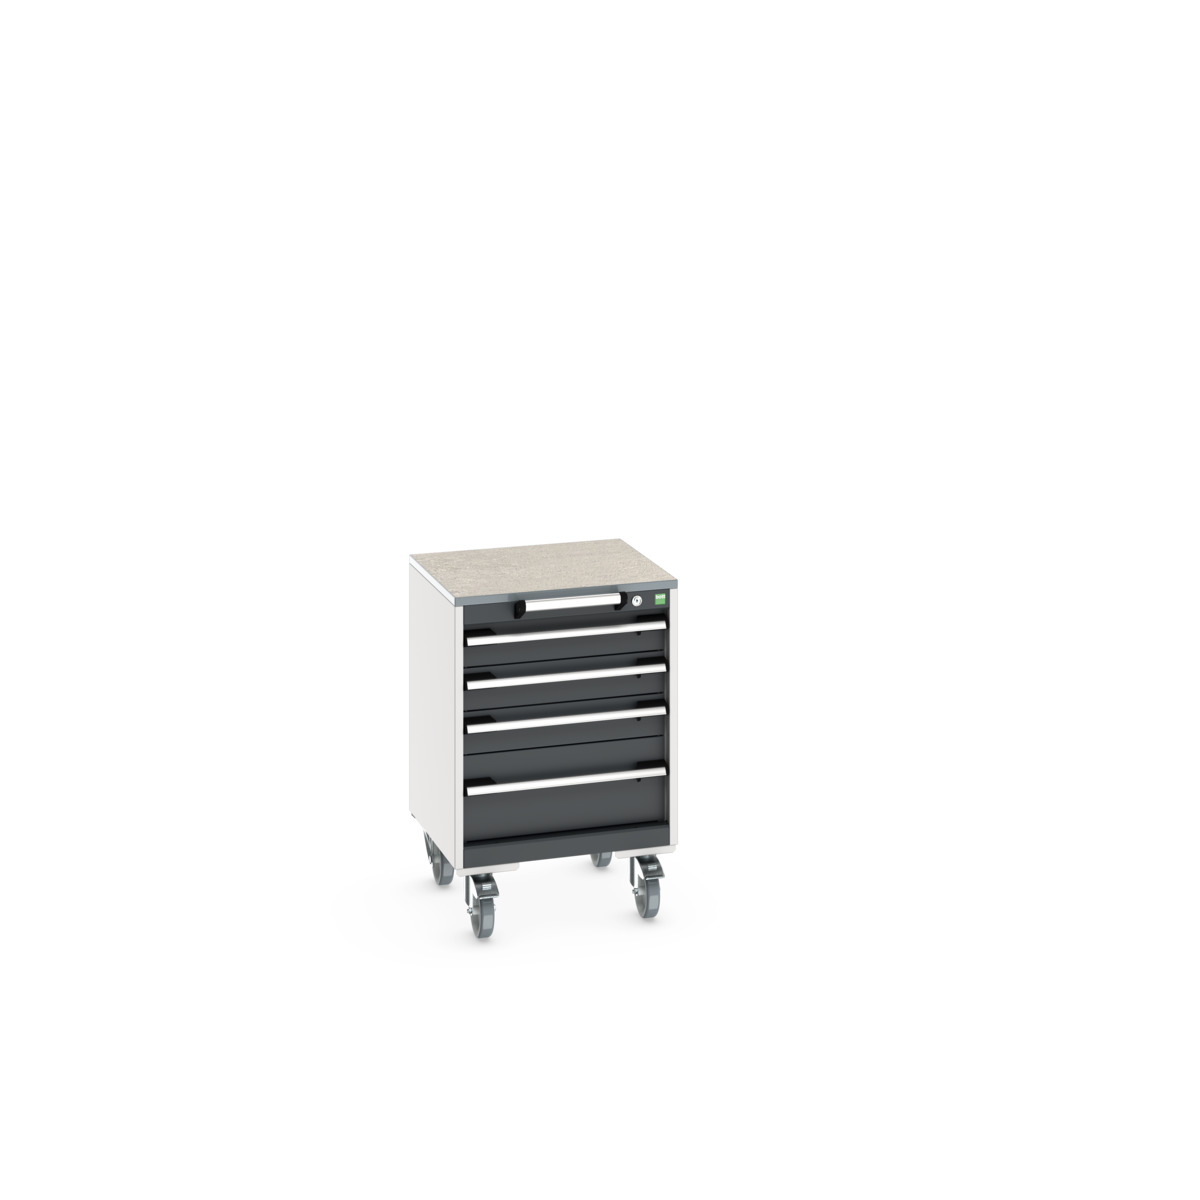 40402134. - cubio mobile cabinet